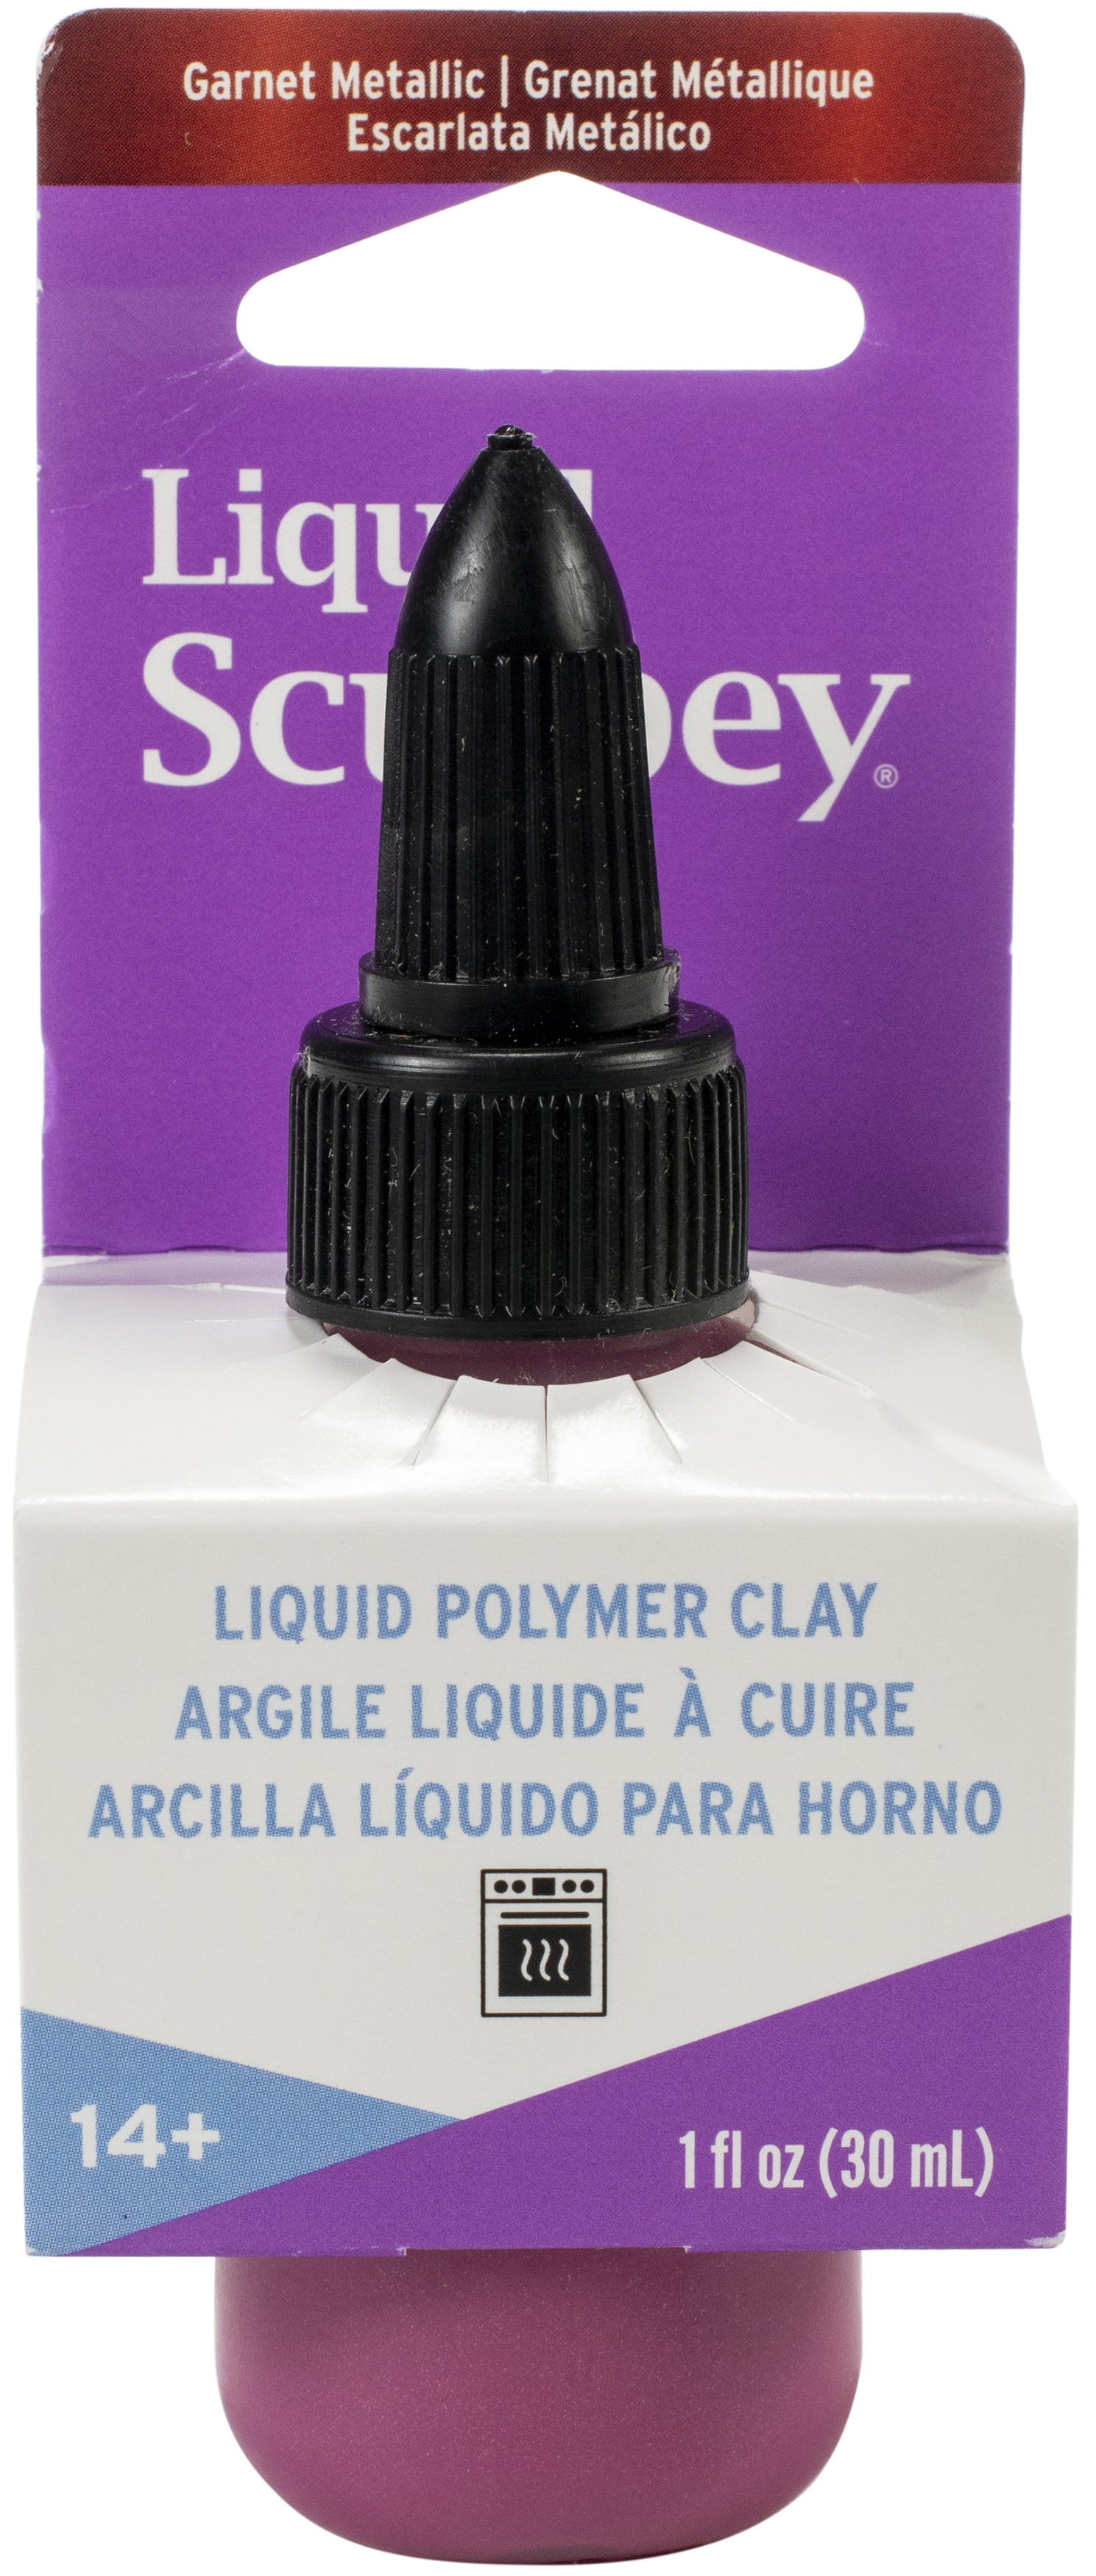 Sculpey Sculpey III Oven-Bake Polymer Clay 2oz Beige 093